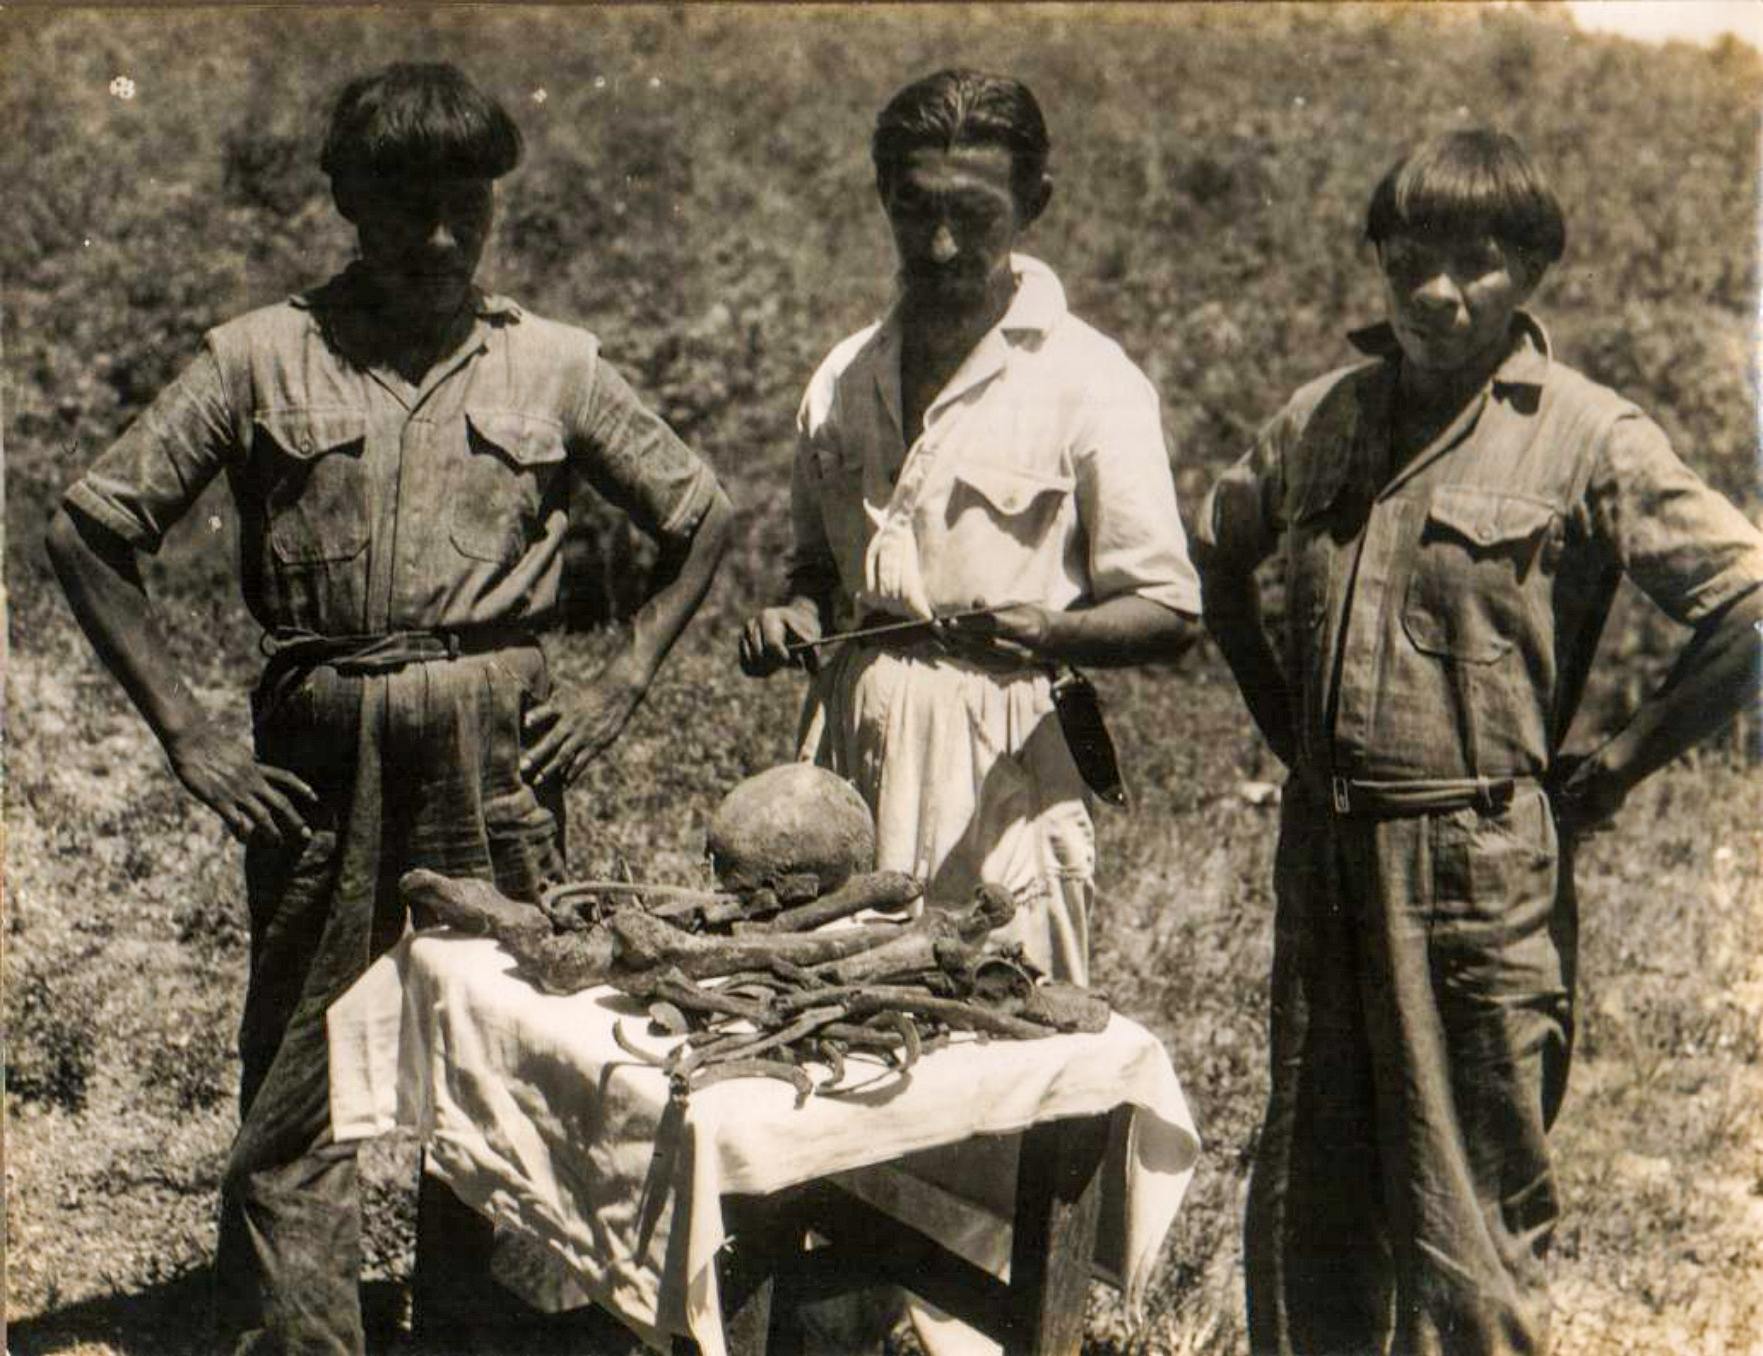 Orlando Villas Bôas y dos indios Kalapalo con el hueso de Cel. Fawcett encontró en el lugar exacto donde los ancianos relataron su muerte. foto de 1952. Archivo CVB de la familia Villas Bôas